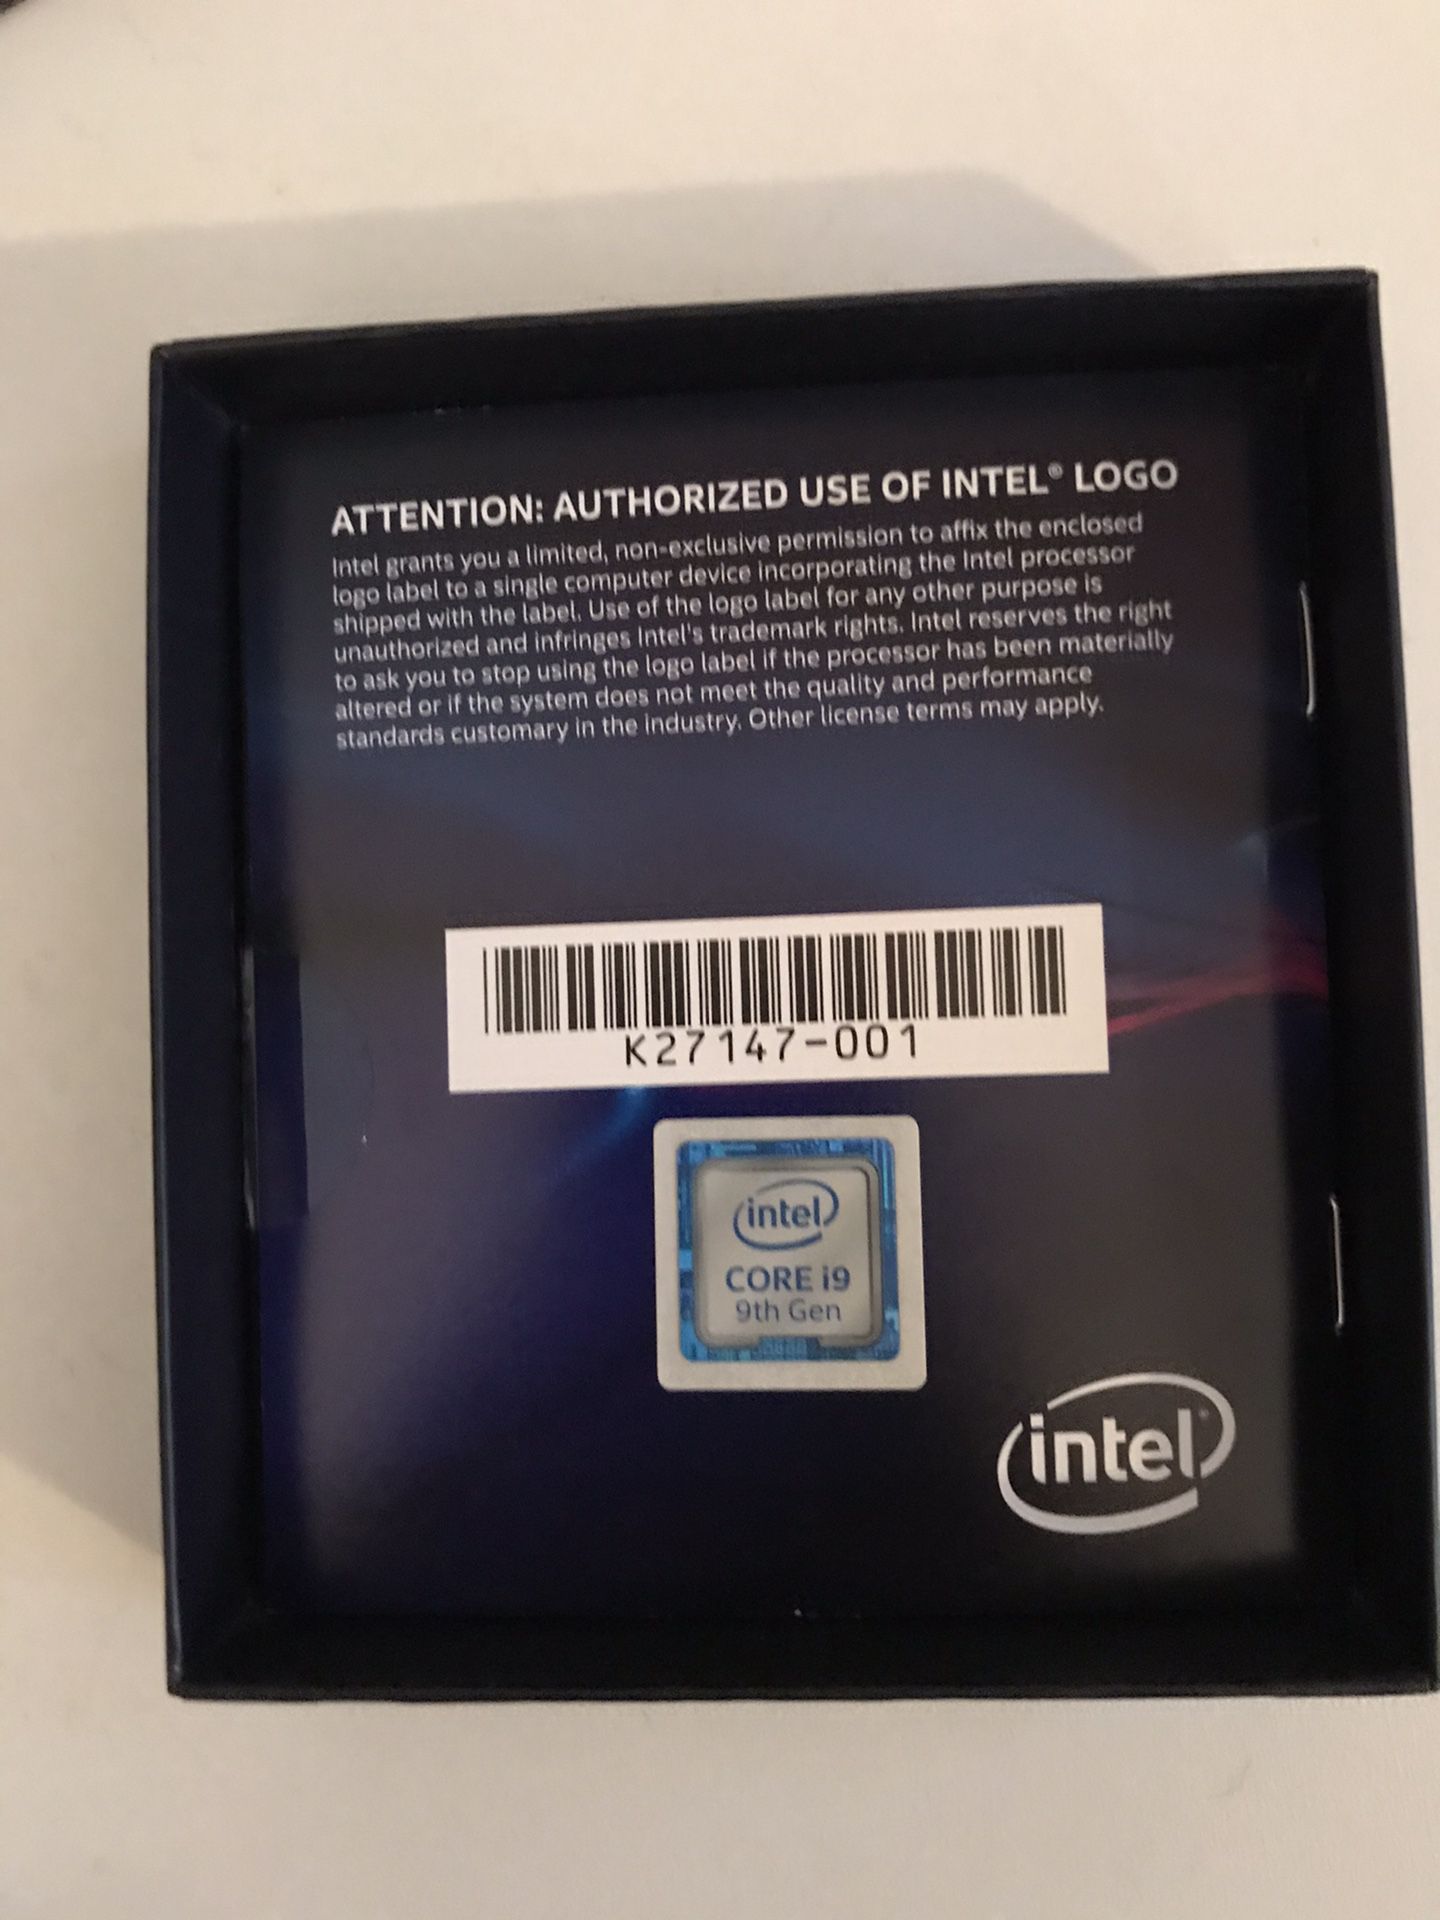 Intel core i9 9th gen